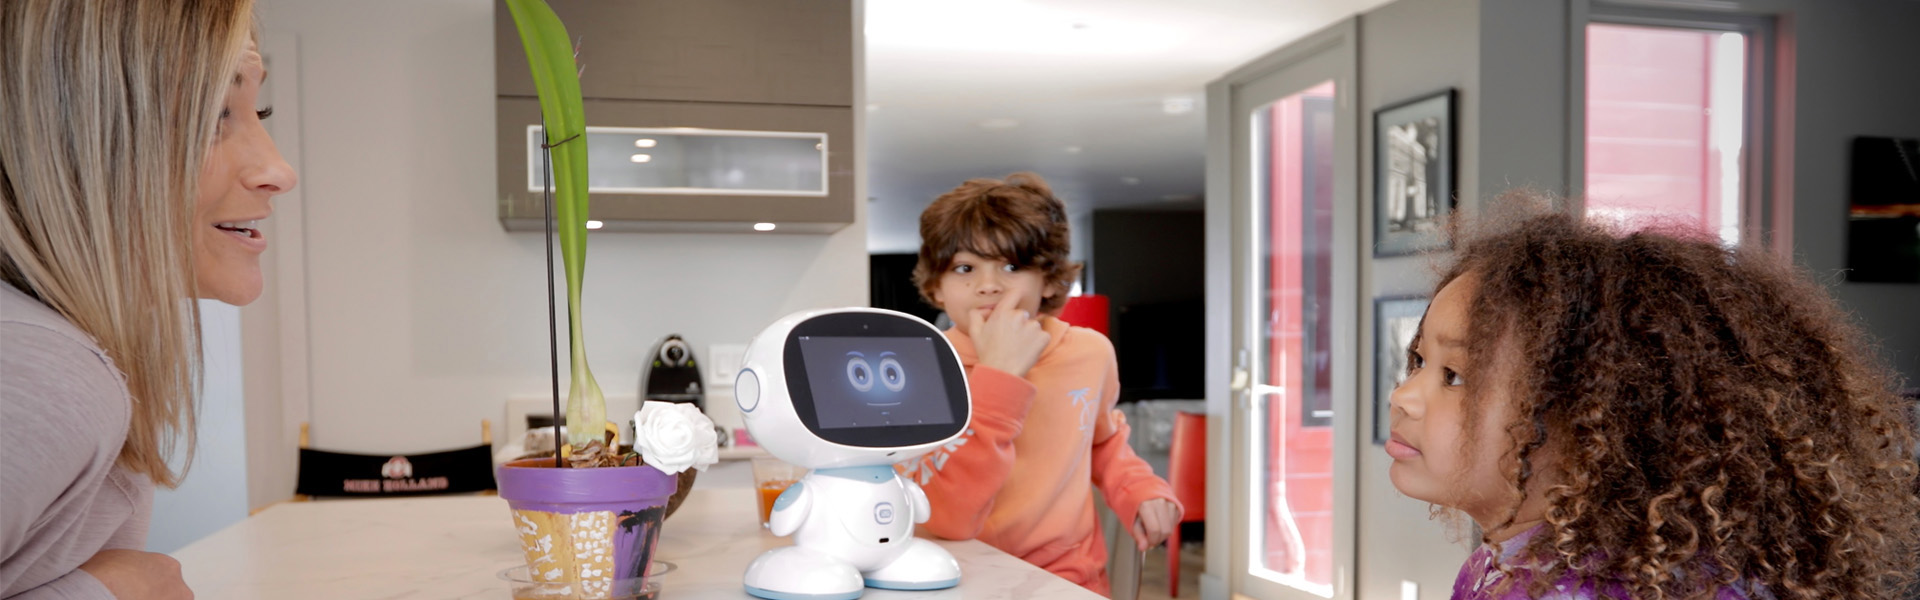 Smart robot for Parents